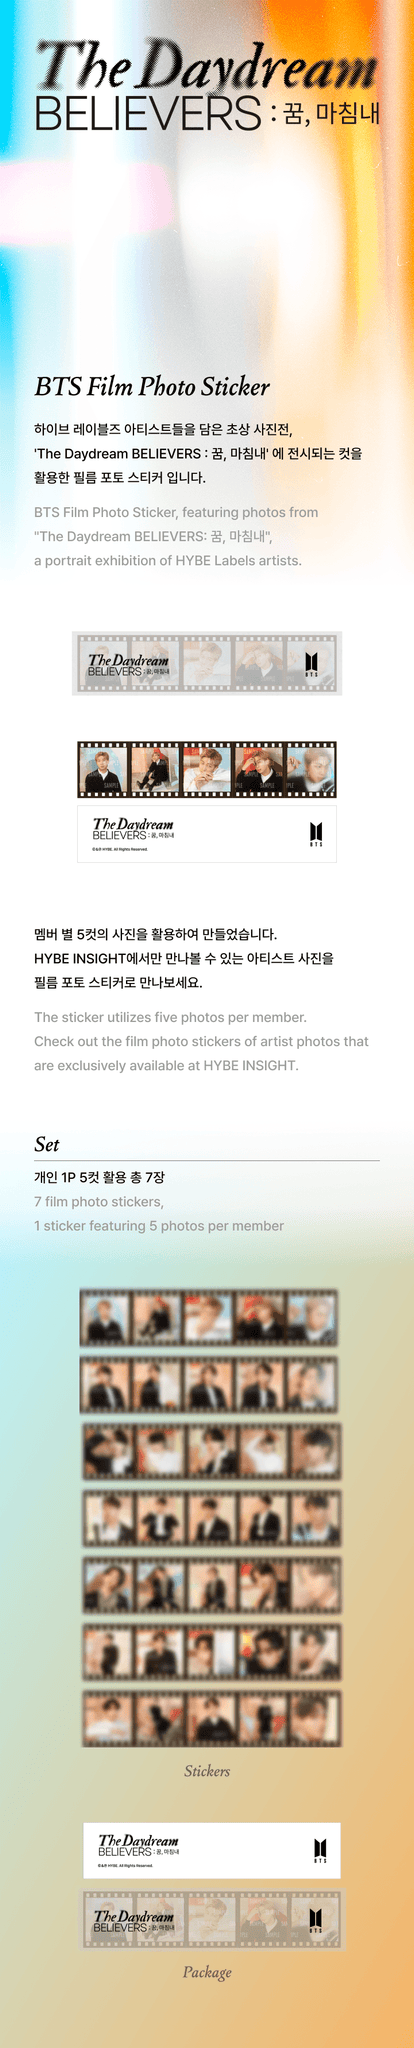 BTS The Daydream Believers Film Photo Sticker